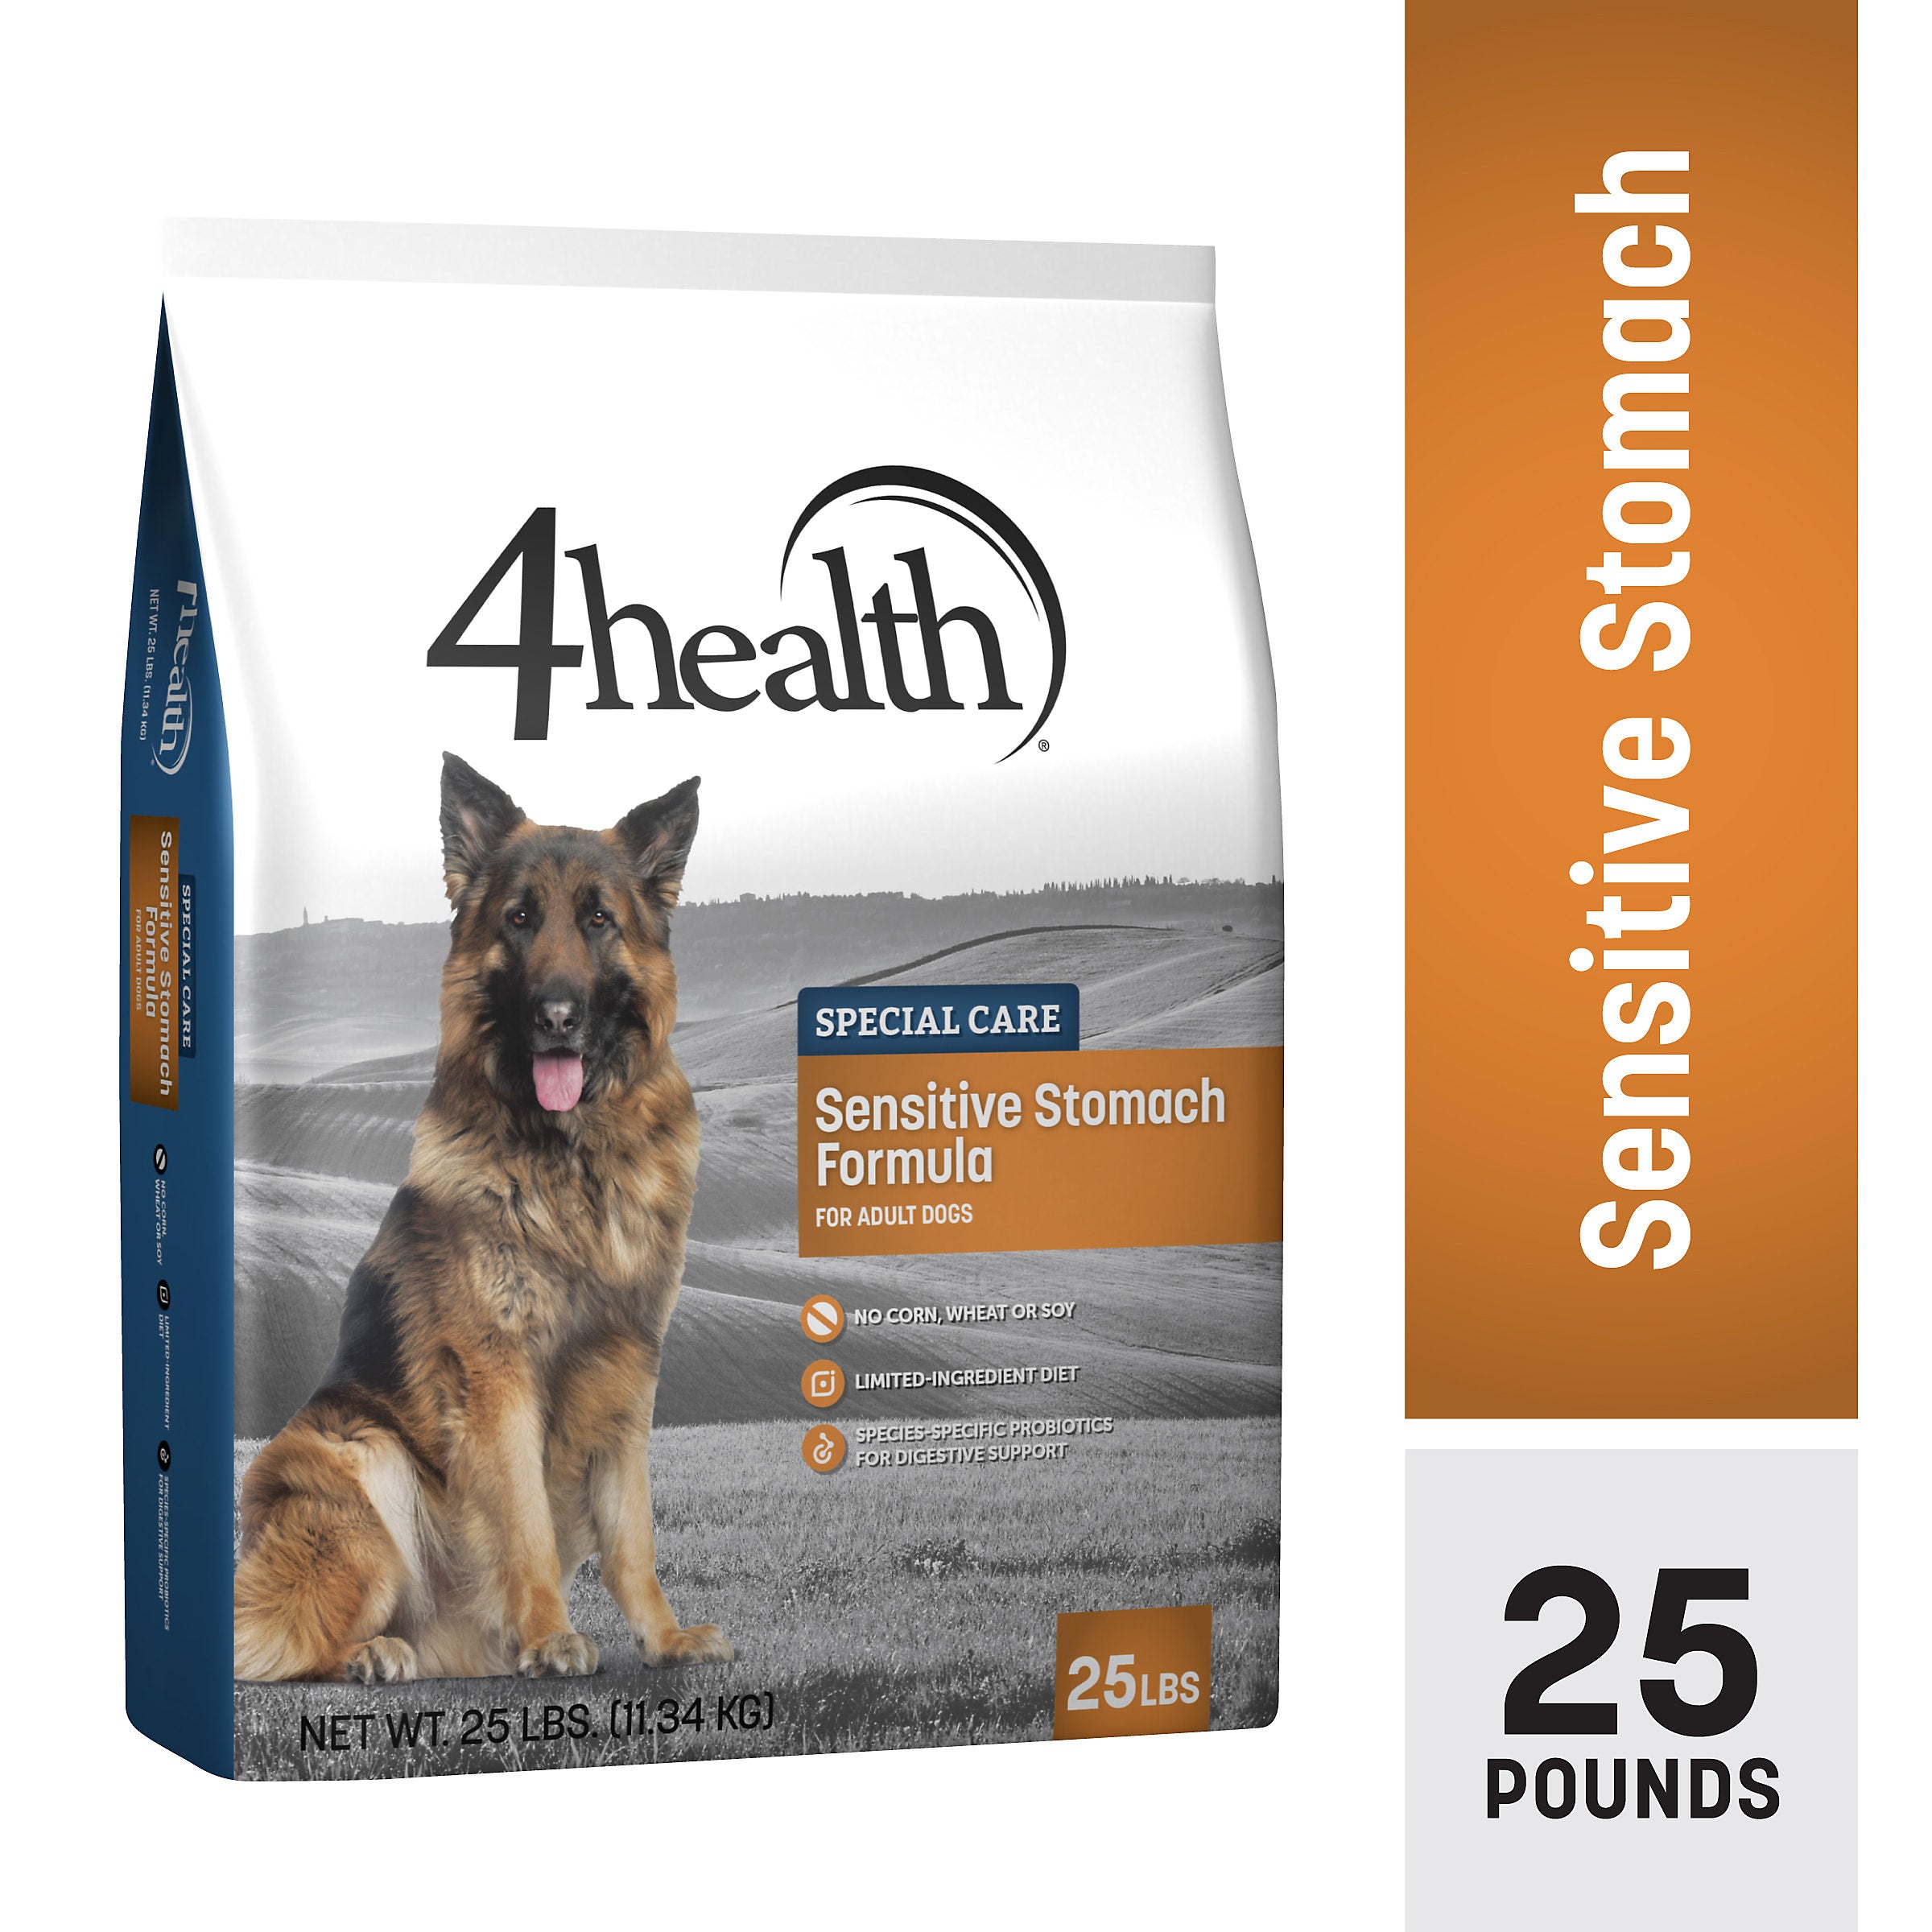 4 health dog food